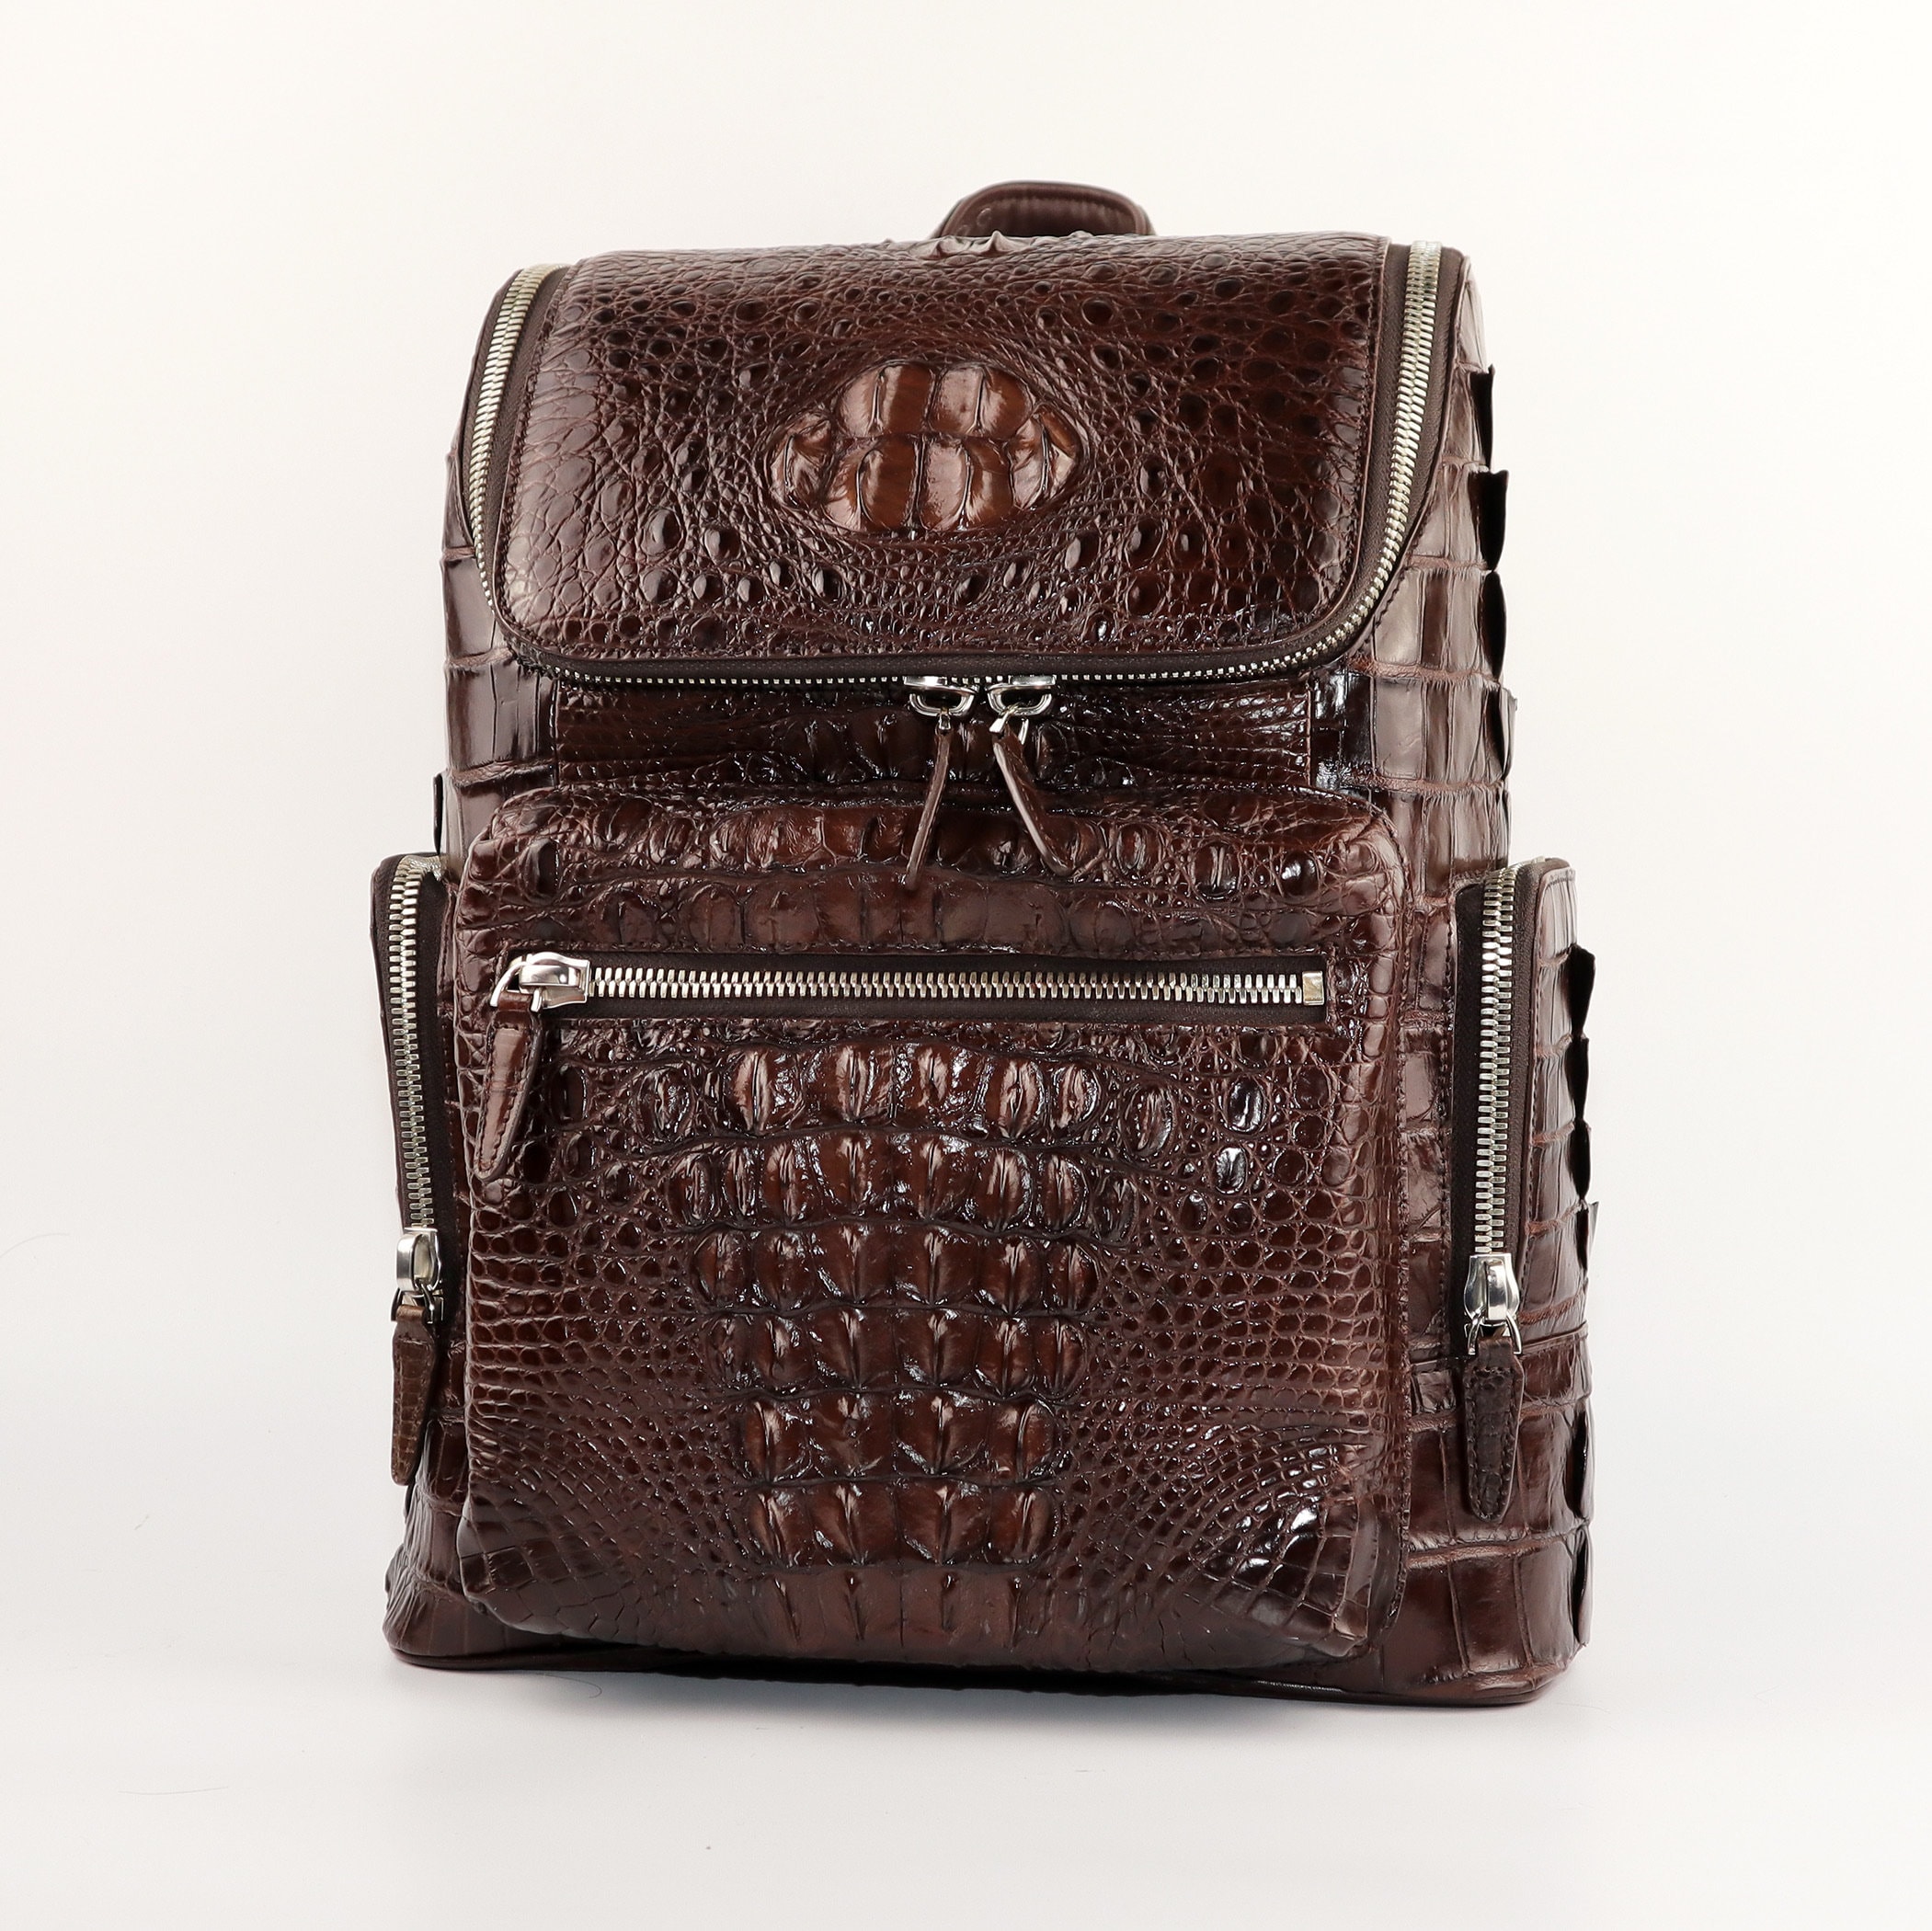 Handcrafted Leather Backpack Shoulder Bag Travel Alligator Bag 